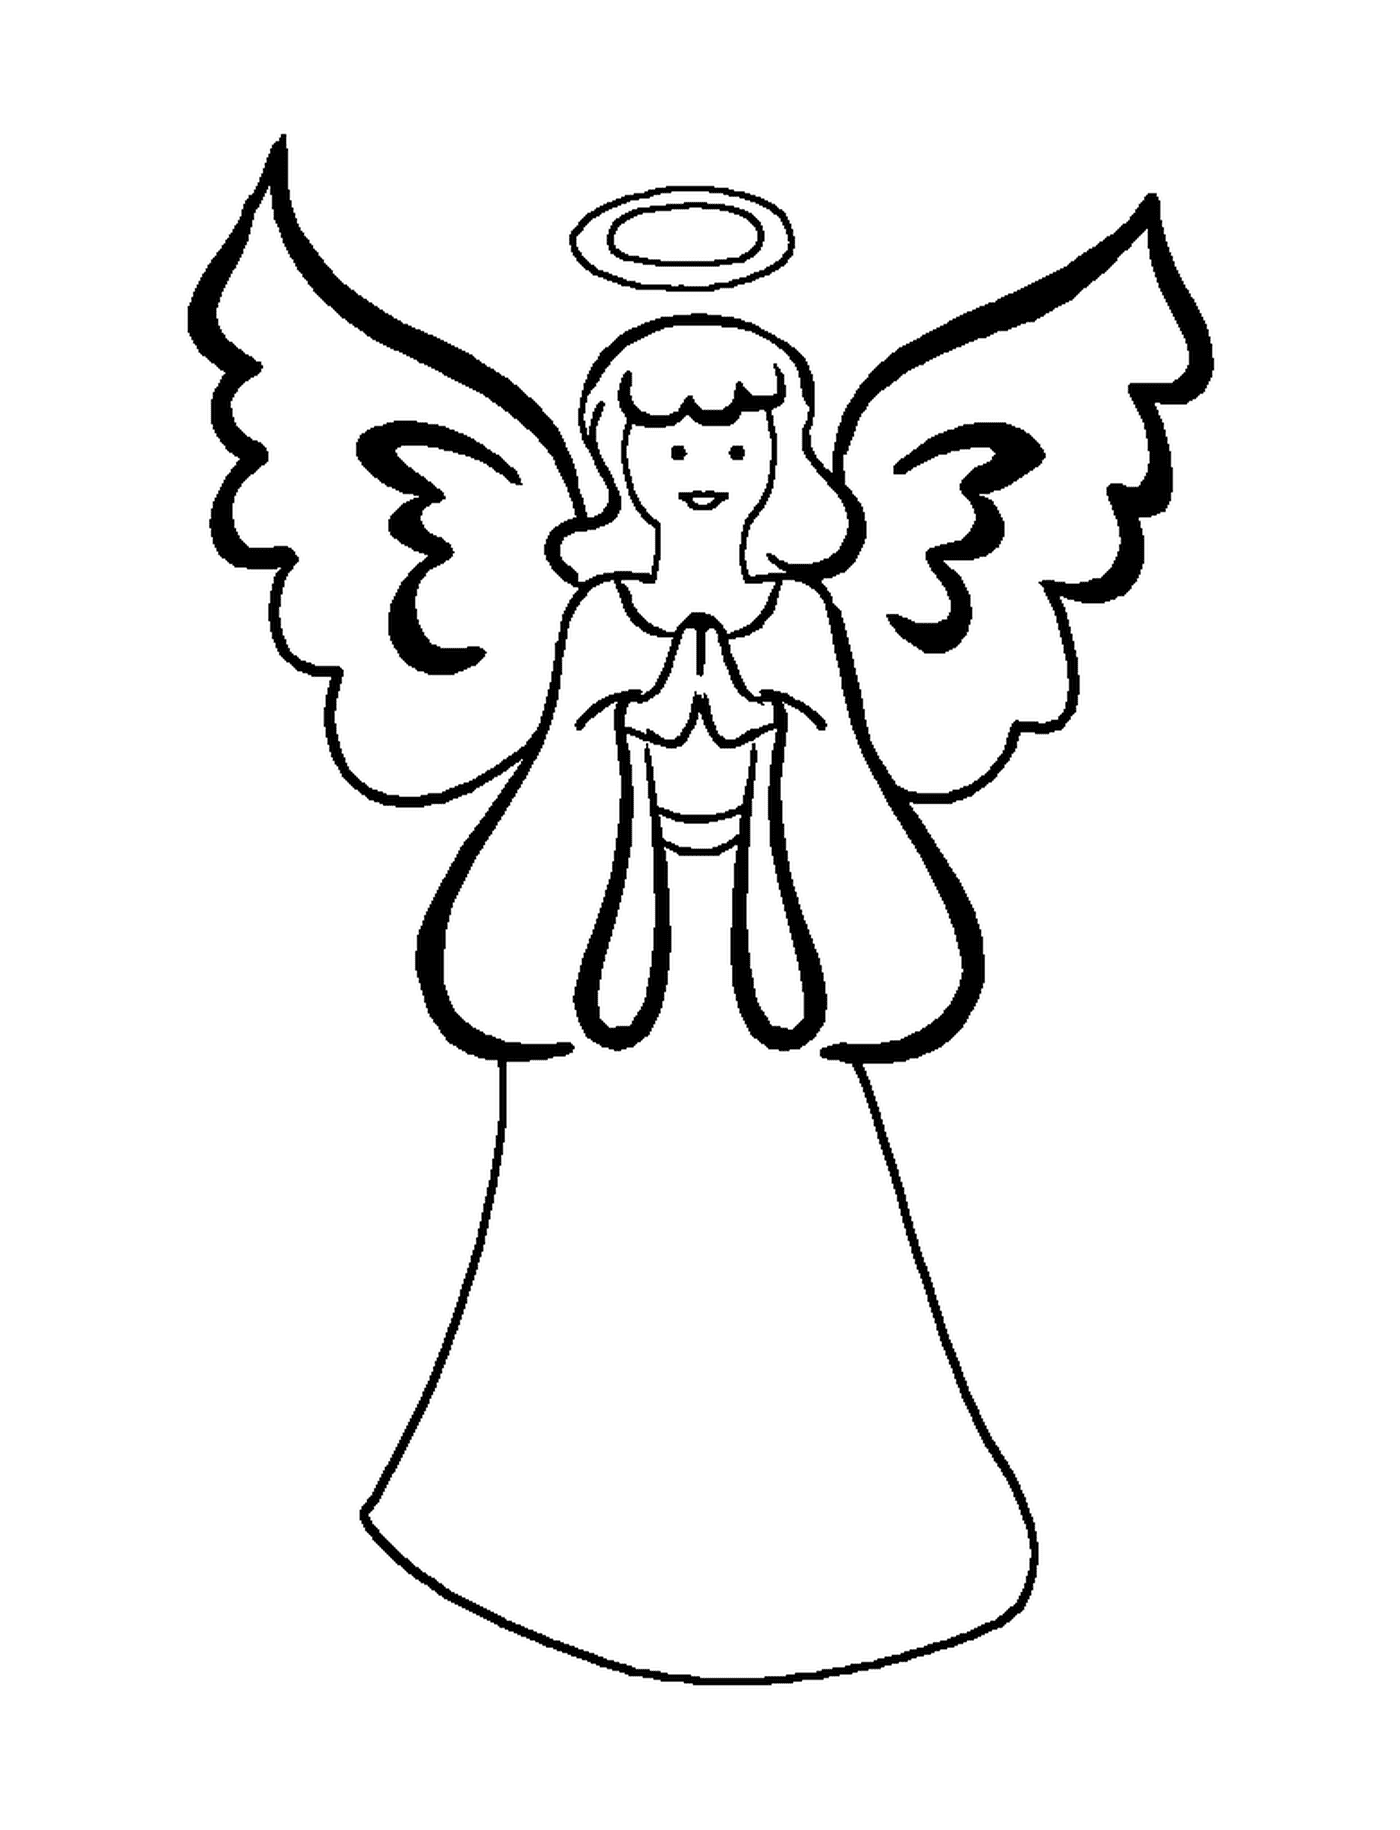  Ein Engel mit ausgestreckten Flügeln 